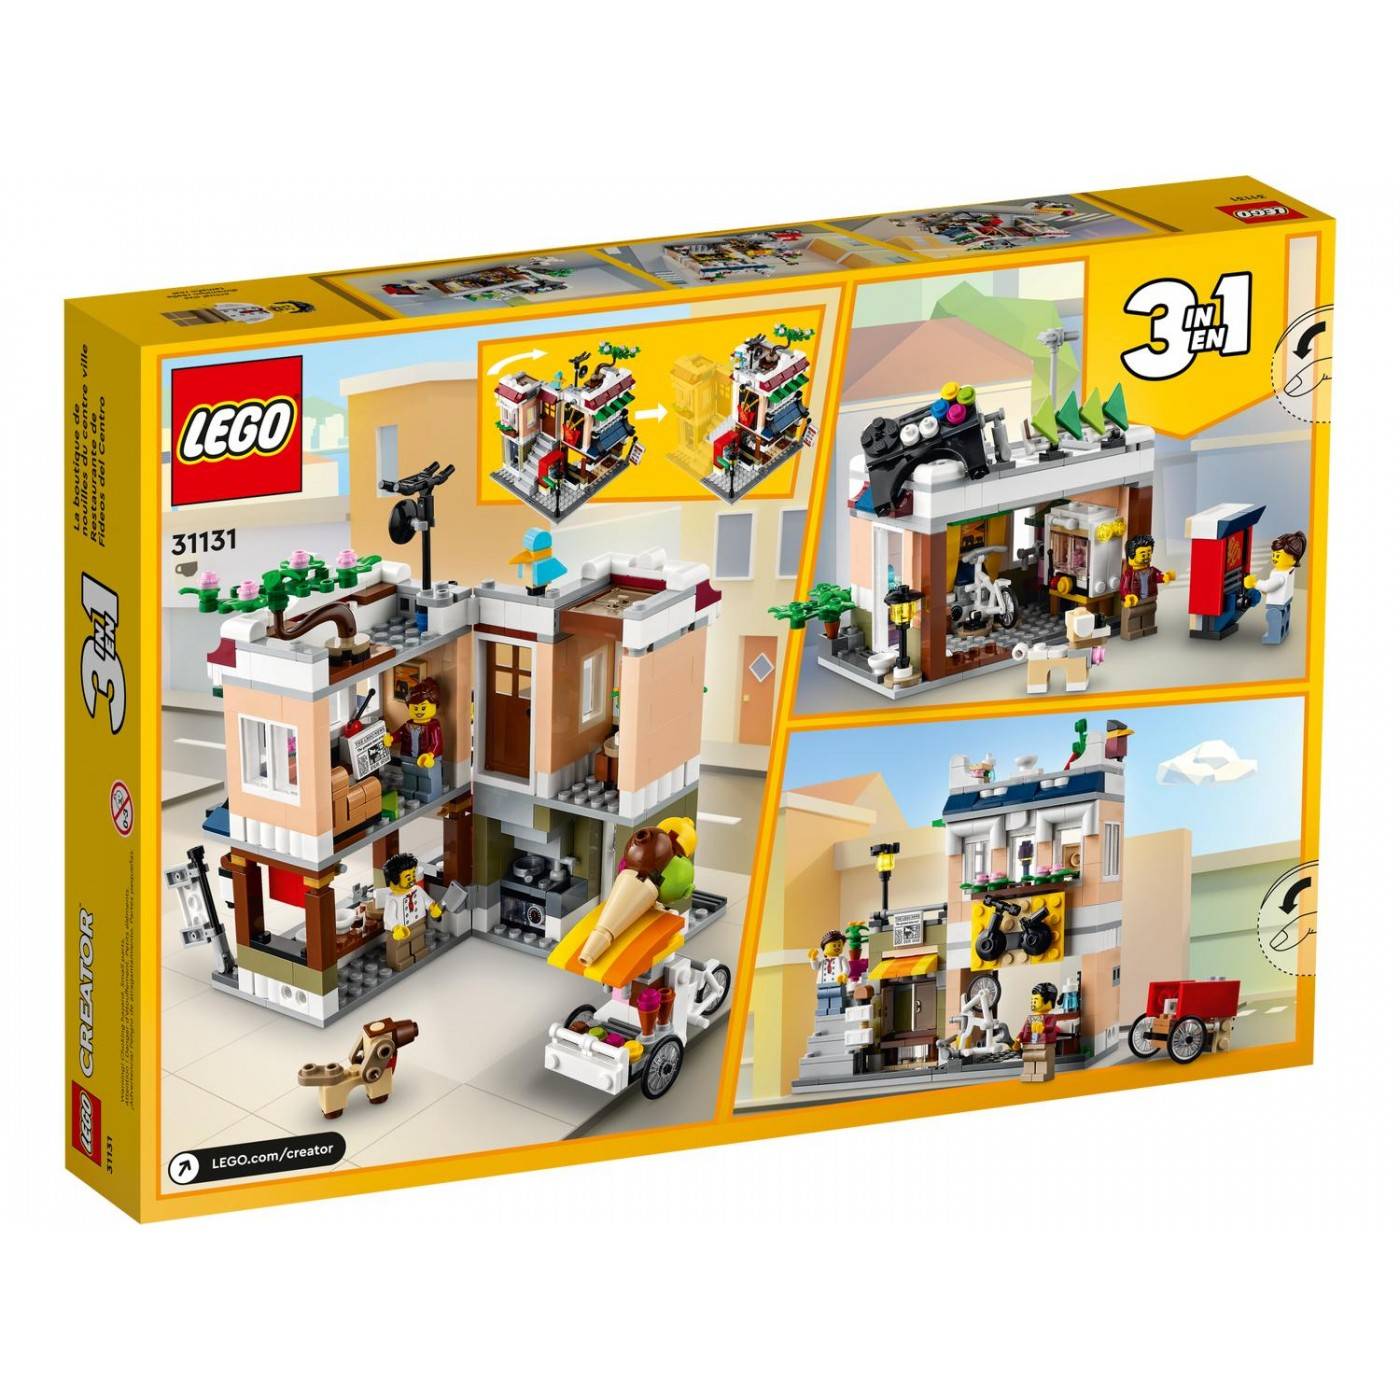 LEGO 31131 CREATOR DOWNTOWN NOODLE SHOP